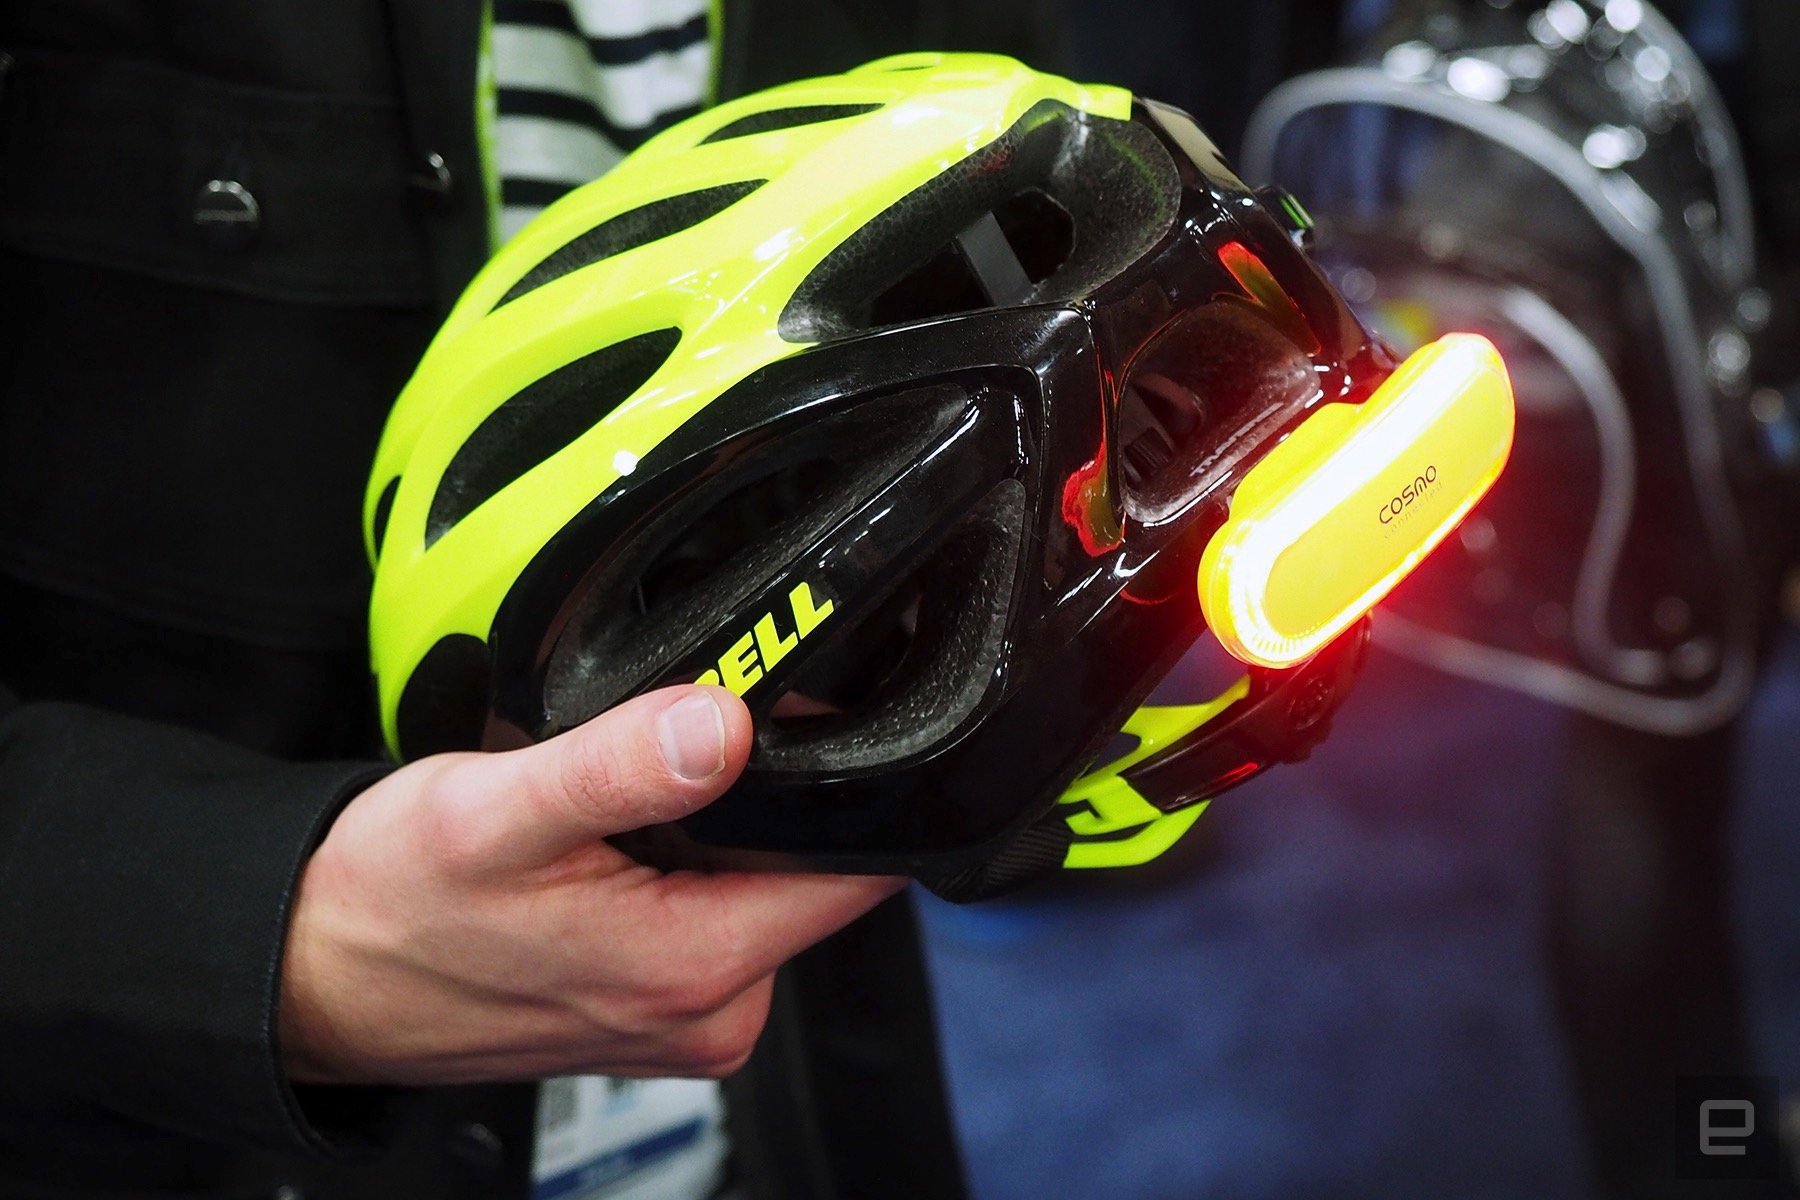 Sécurité à vélo : l'indicateur lumineux connecté pour casque de cycliste  signale changement de direction, chute et plus